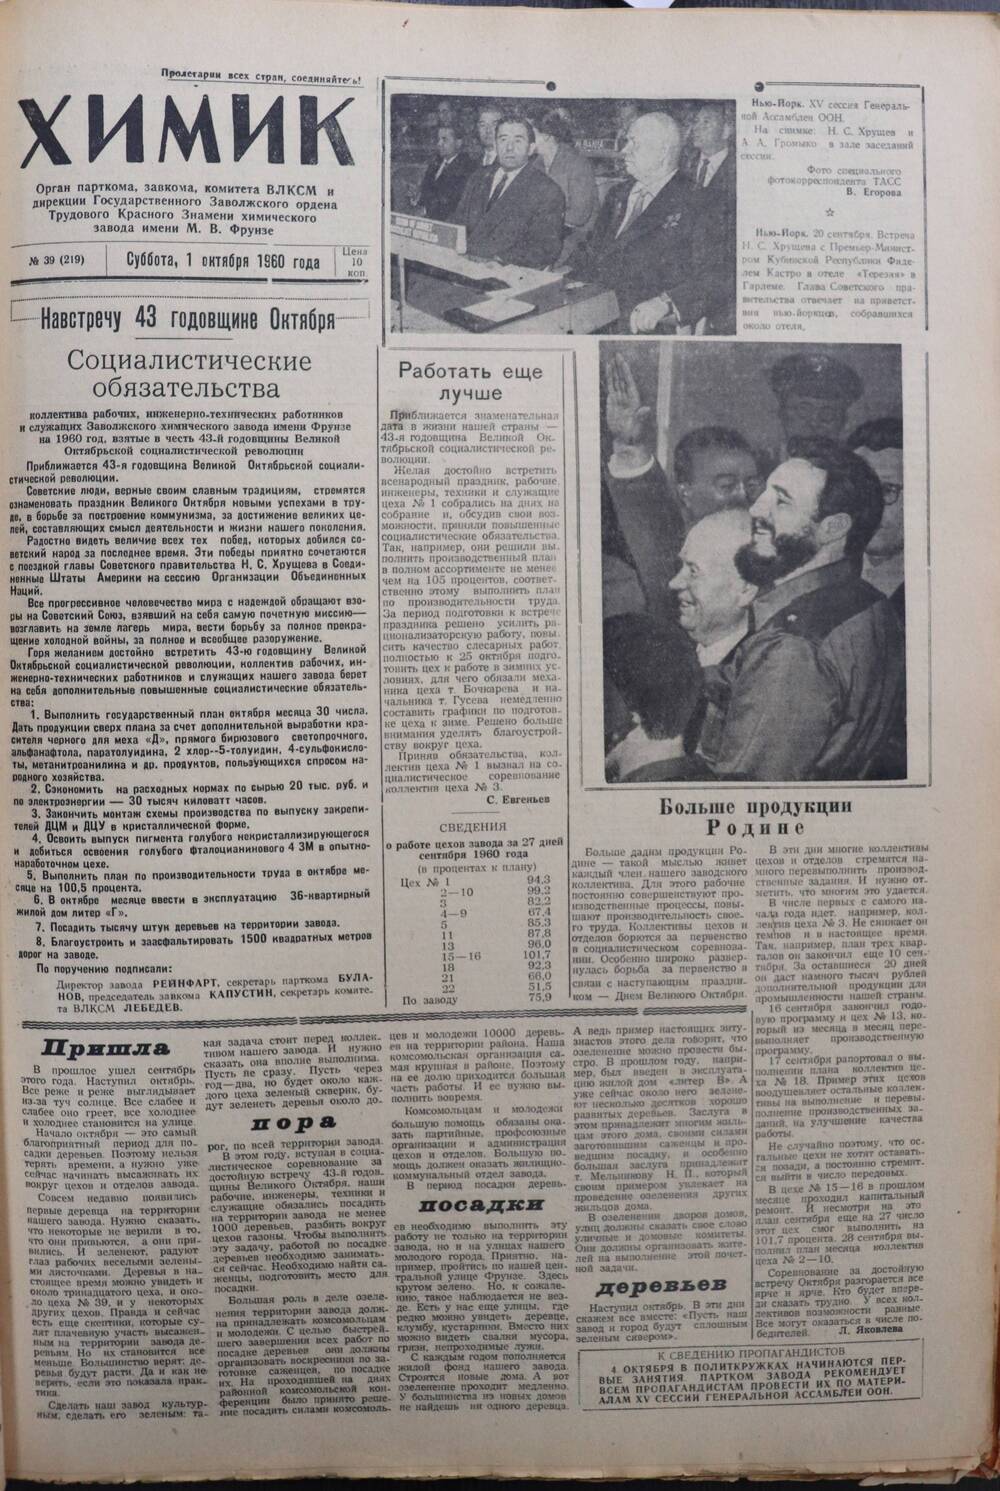 Газета «Химик» № 39 от 1 октября 1960 года.